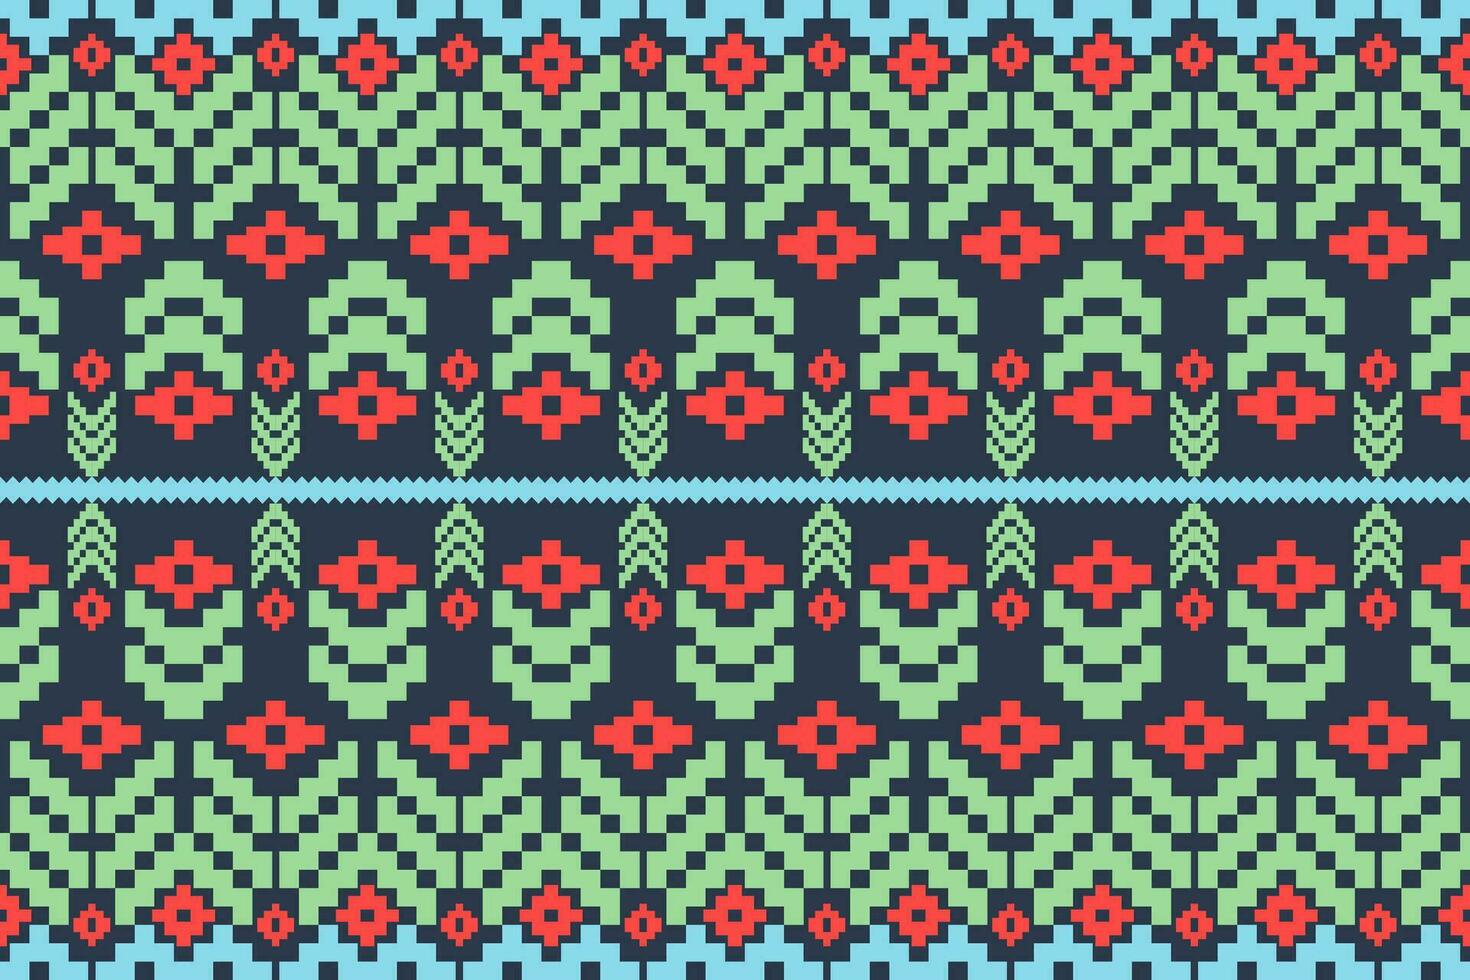 meetkundig etnisch oosters patroon traditioneel ontwerp voor stof, tapijt, kleding, textiel, batik.etnisch abstract ikat naadloos patroon in tribal.borduurwerk stijl. vector